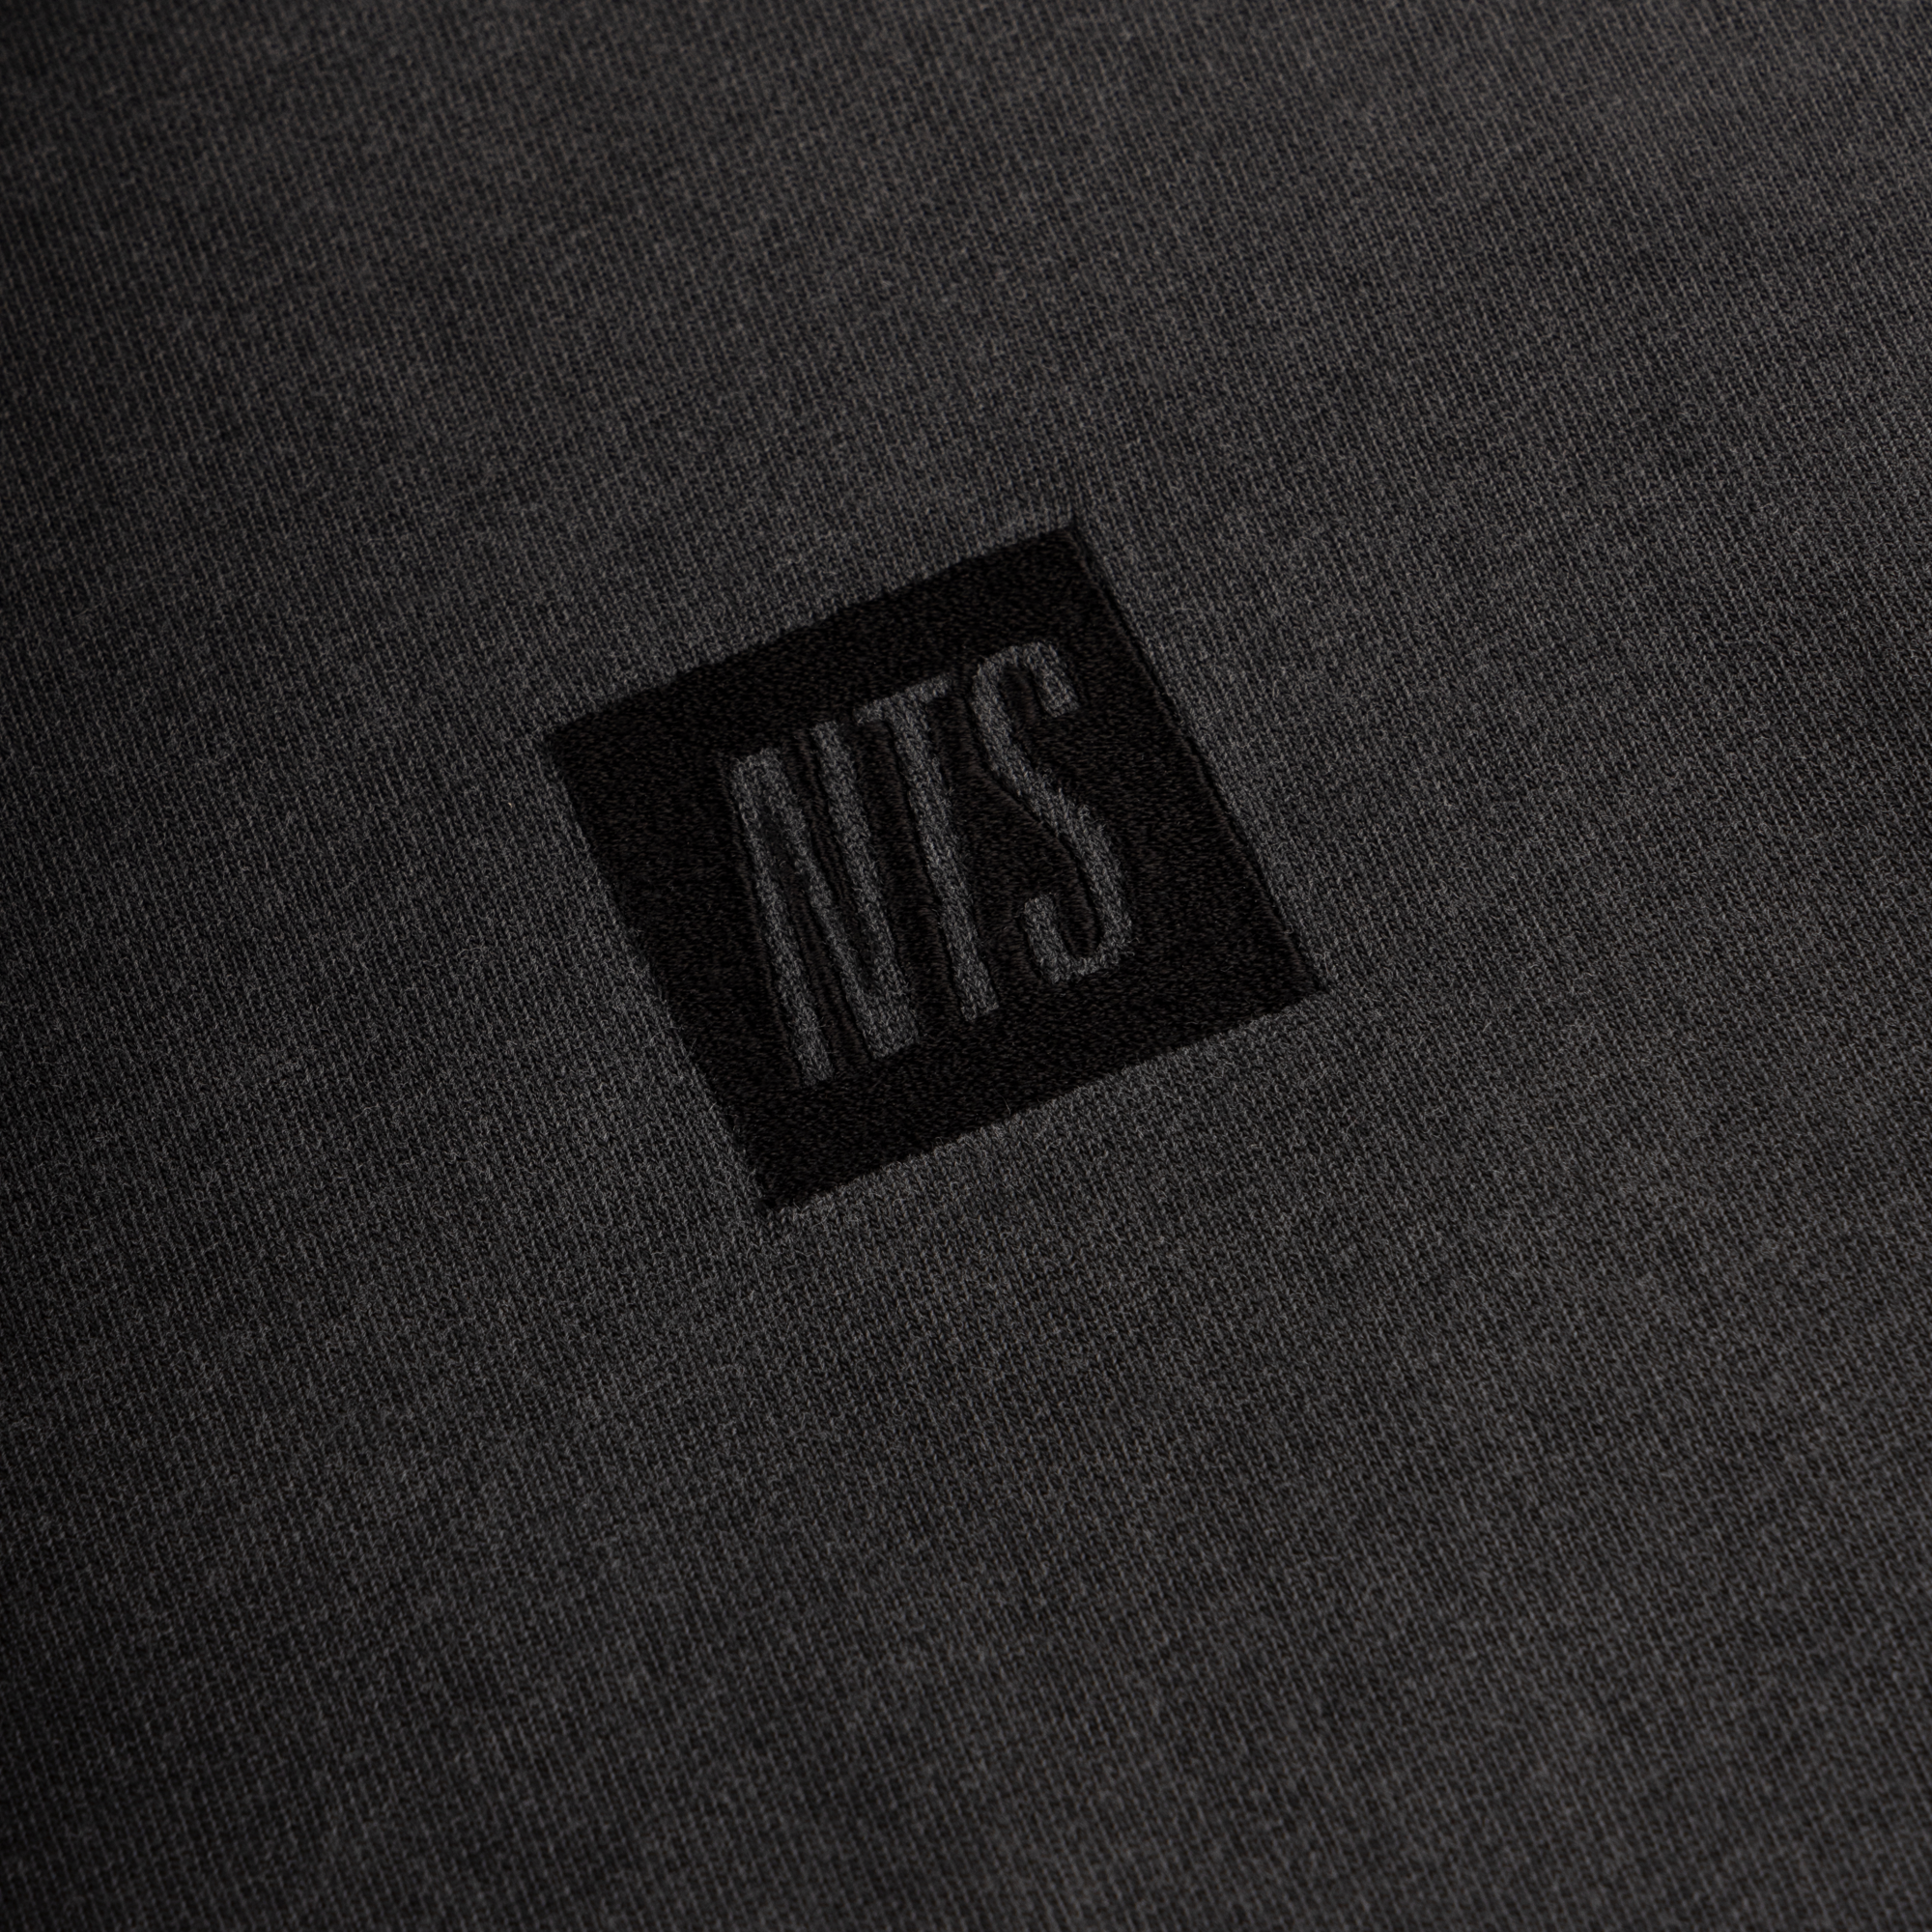 NTS RADIO - Icon Longsleeve - Black On Vintage Black